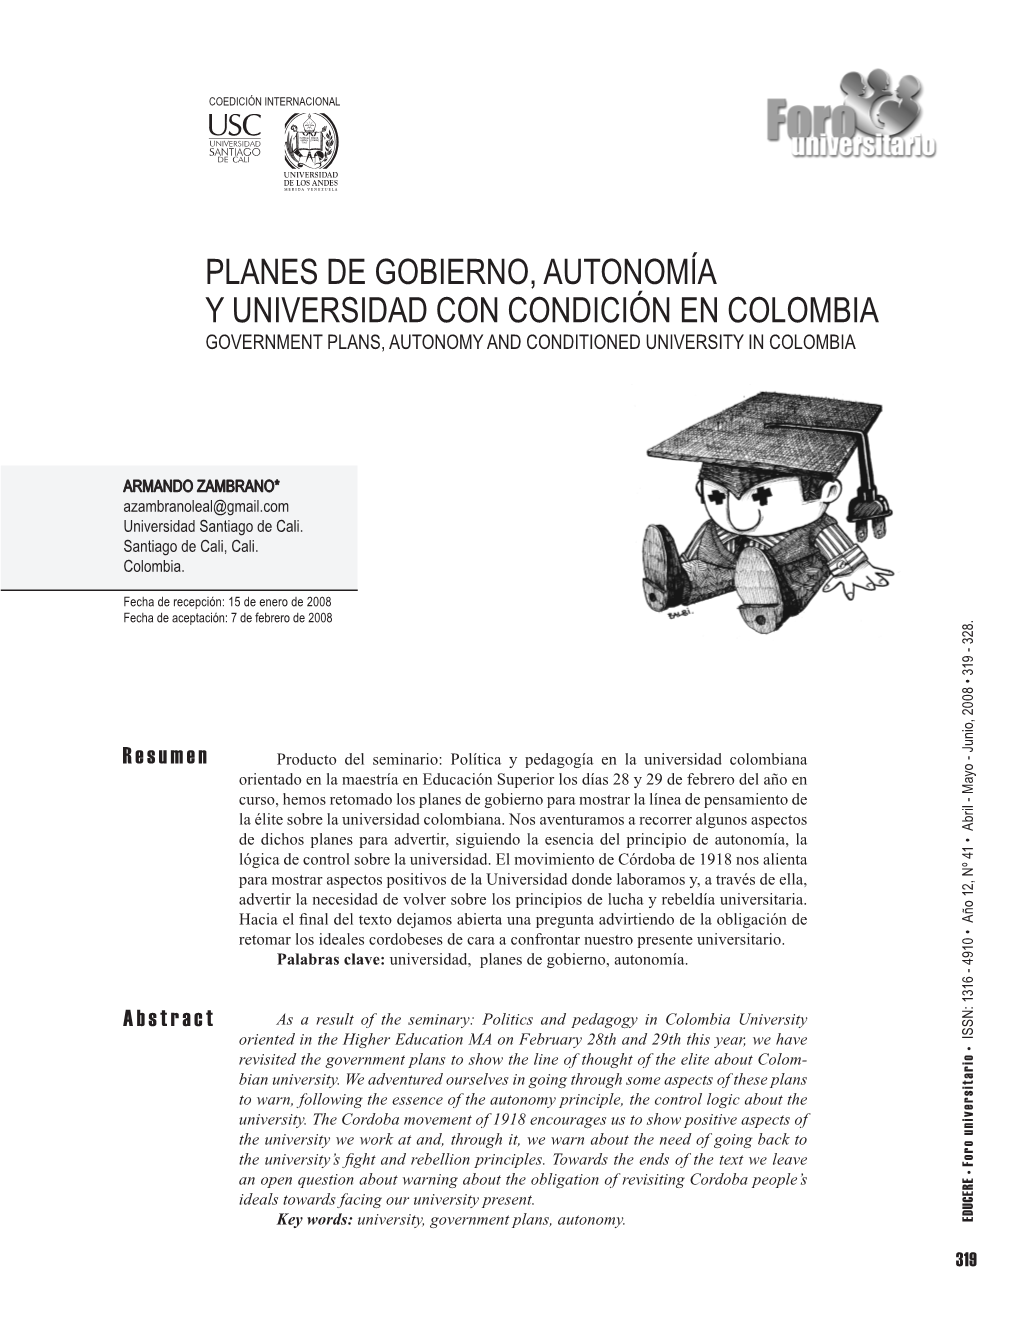 Planes De Gobierno, Autonomía Y Universidad Con Condición En Colombia Government Plans, Autonomy and Conditioned University in Colombia